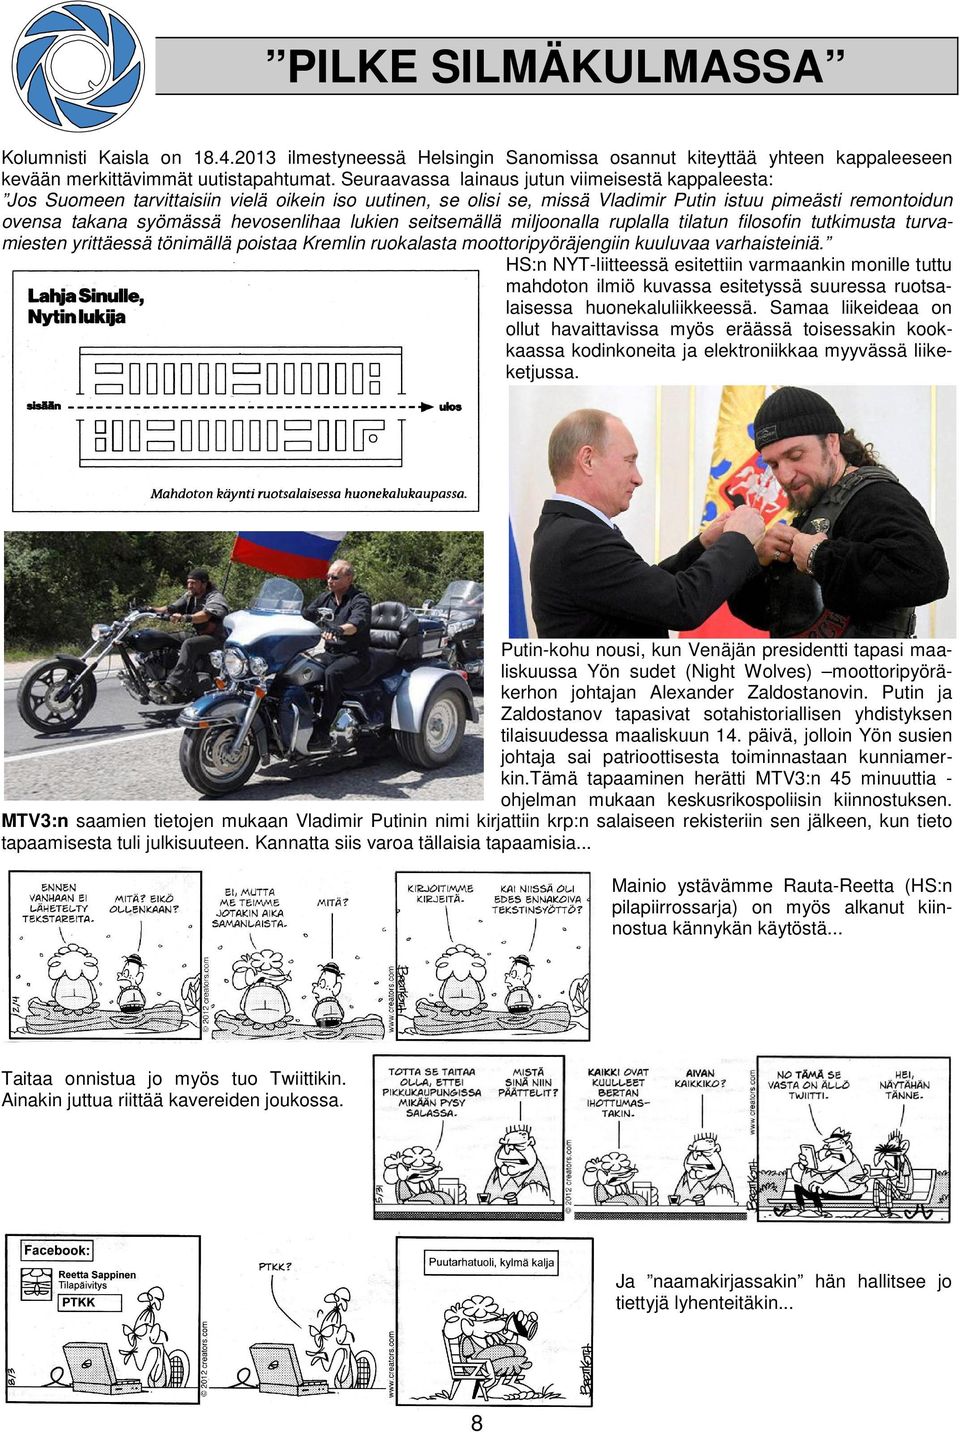 lukien seitsemällä miljoonalla ruplalla tilatun filosofin tutkimusta turvamiesten yrittäessä tönimällä poistaa Kremlin ruokalasta moottoripyöräjengiin kuuluvaa varhaisteiniä.